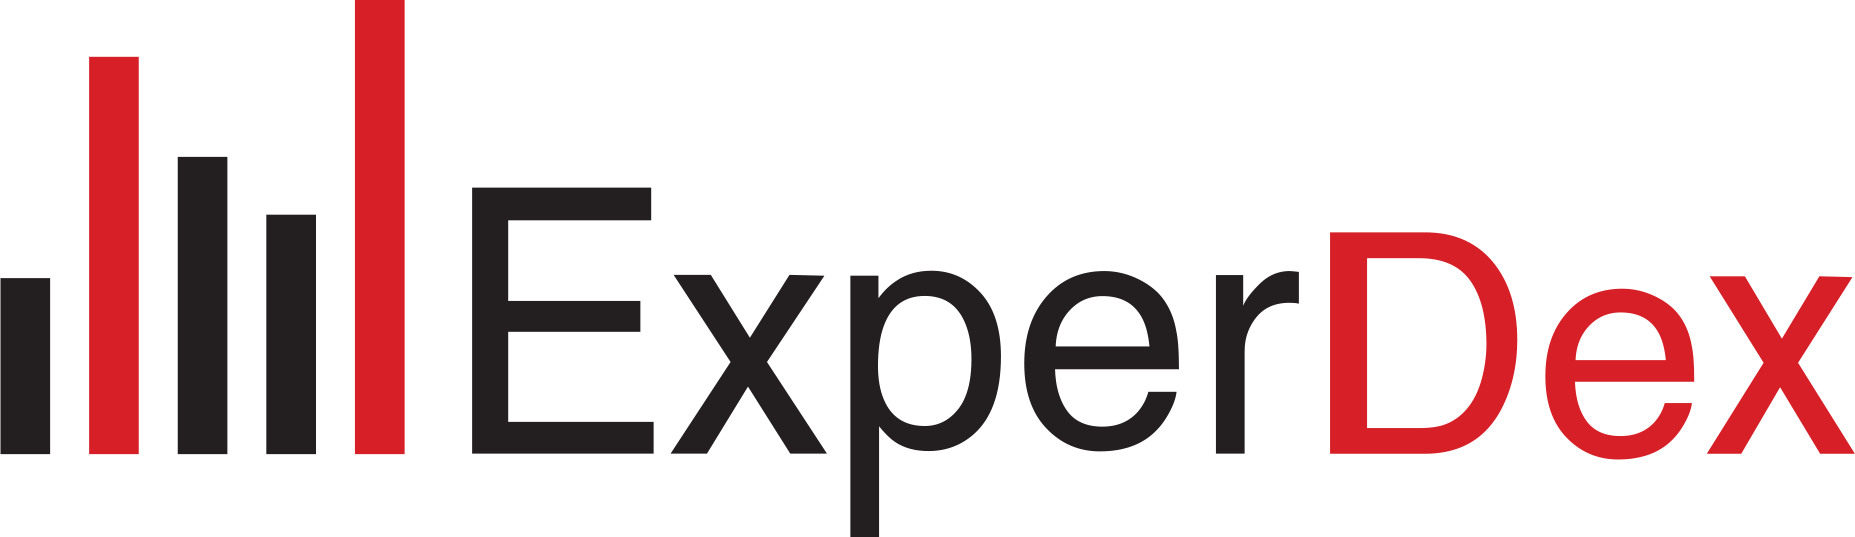 Experdex